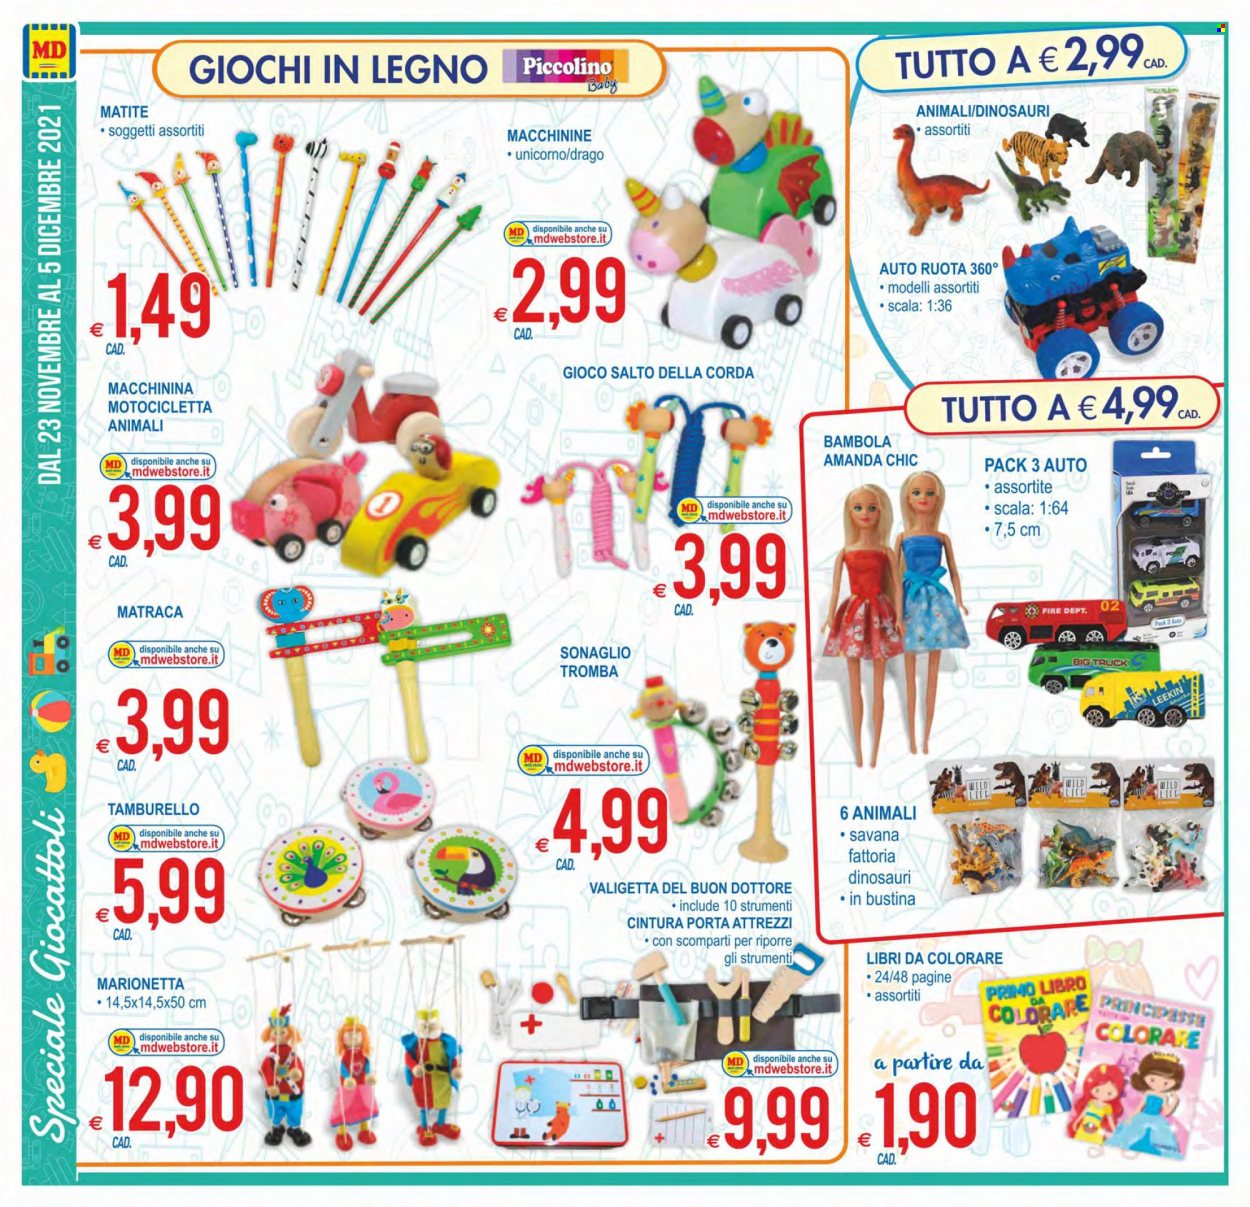 thumbnail - Volantino MD Discount - 23/11/2021 - 5/12/2021 - Prodotti in offerta - matita, valigetta, bambola, dinosauri, unicorno, giocattoli, gioco, scala, corda, ruota. Pagina 18.